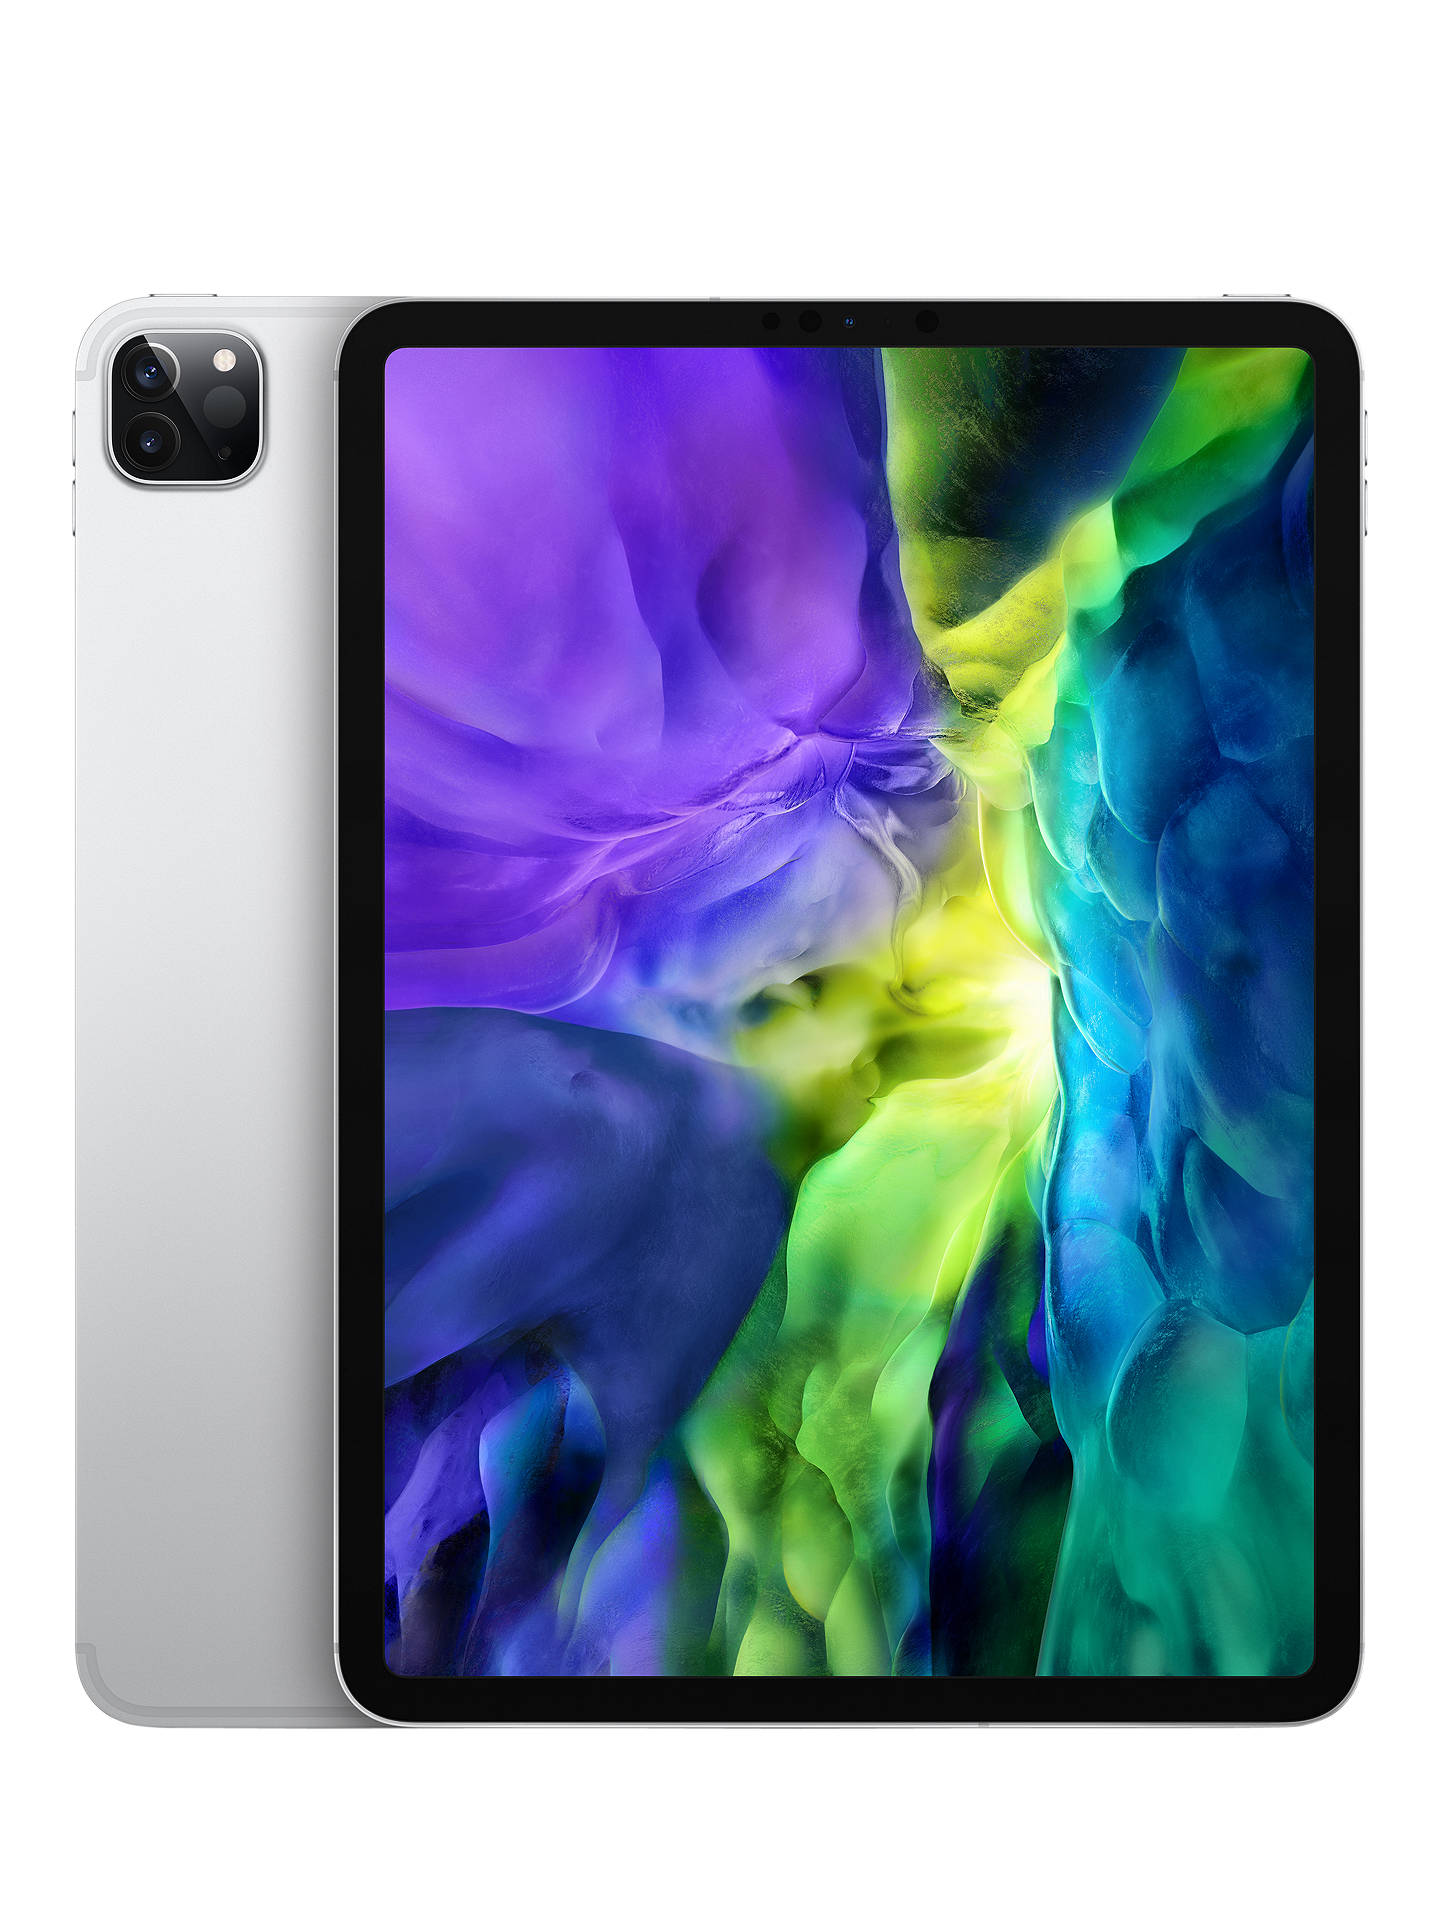 2020 Apple iPad Pro 11", A12Z Bionic, iOS, Wi-Fi & Cellular, 256GB at